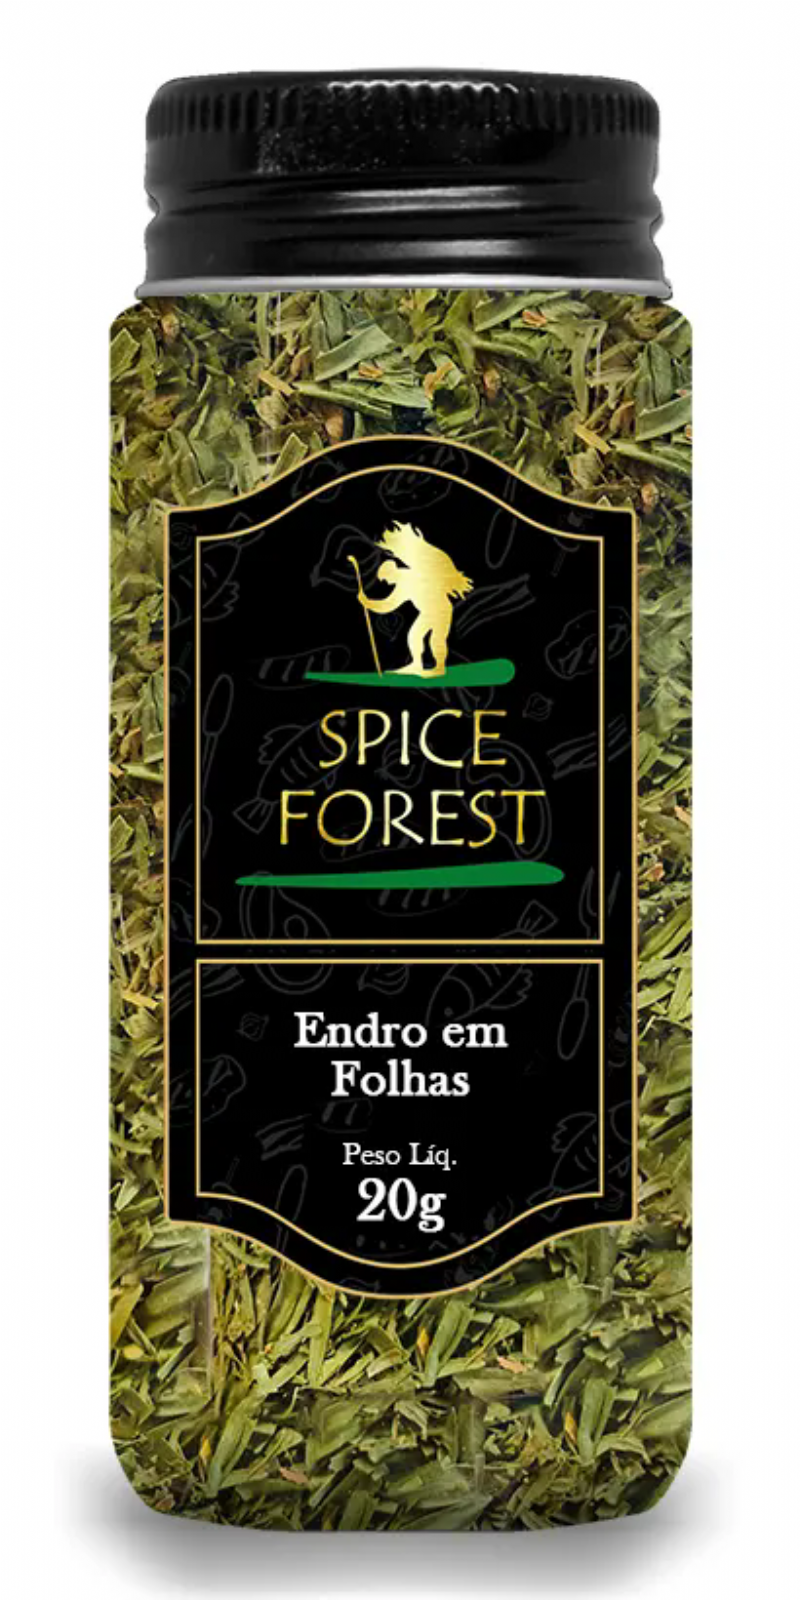 Endro em Folhas 20g - Sem Glten - Spice Forest